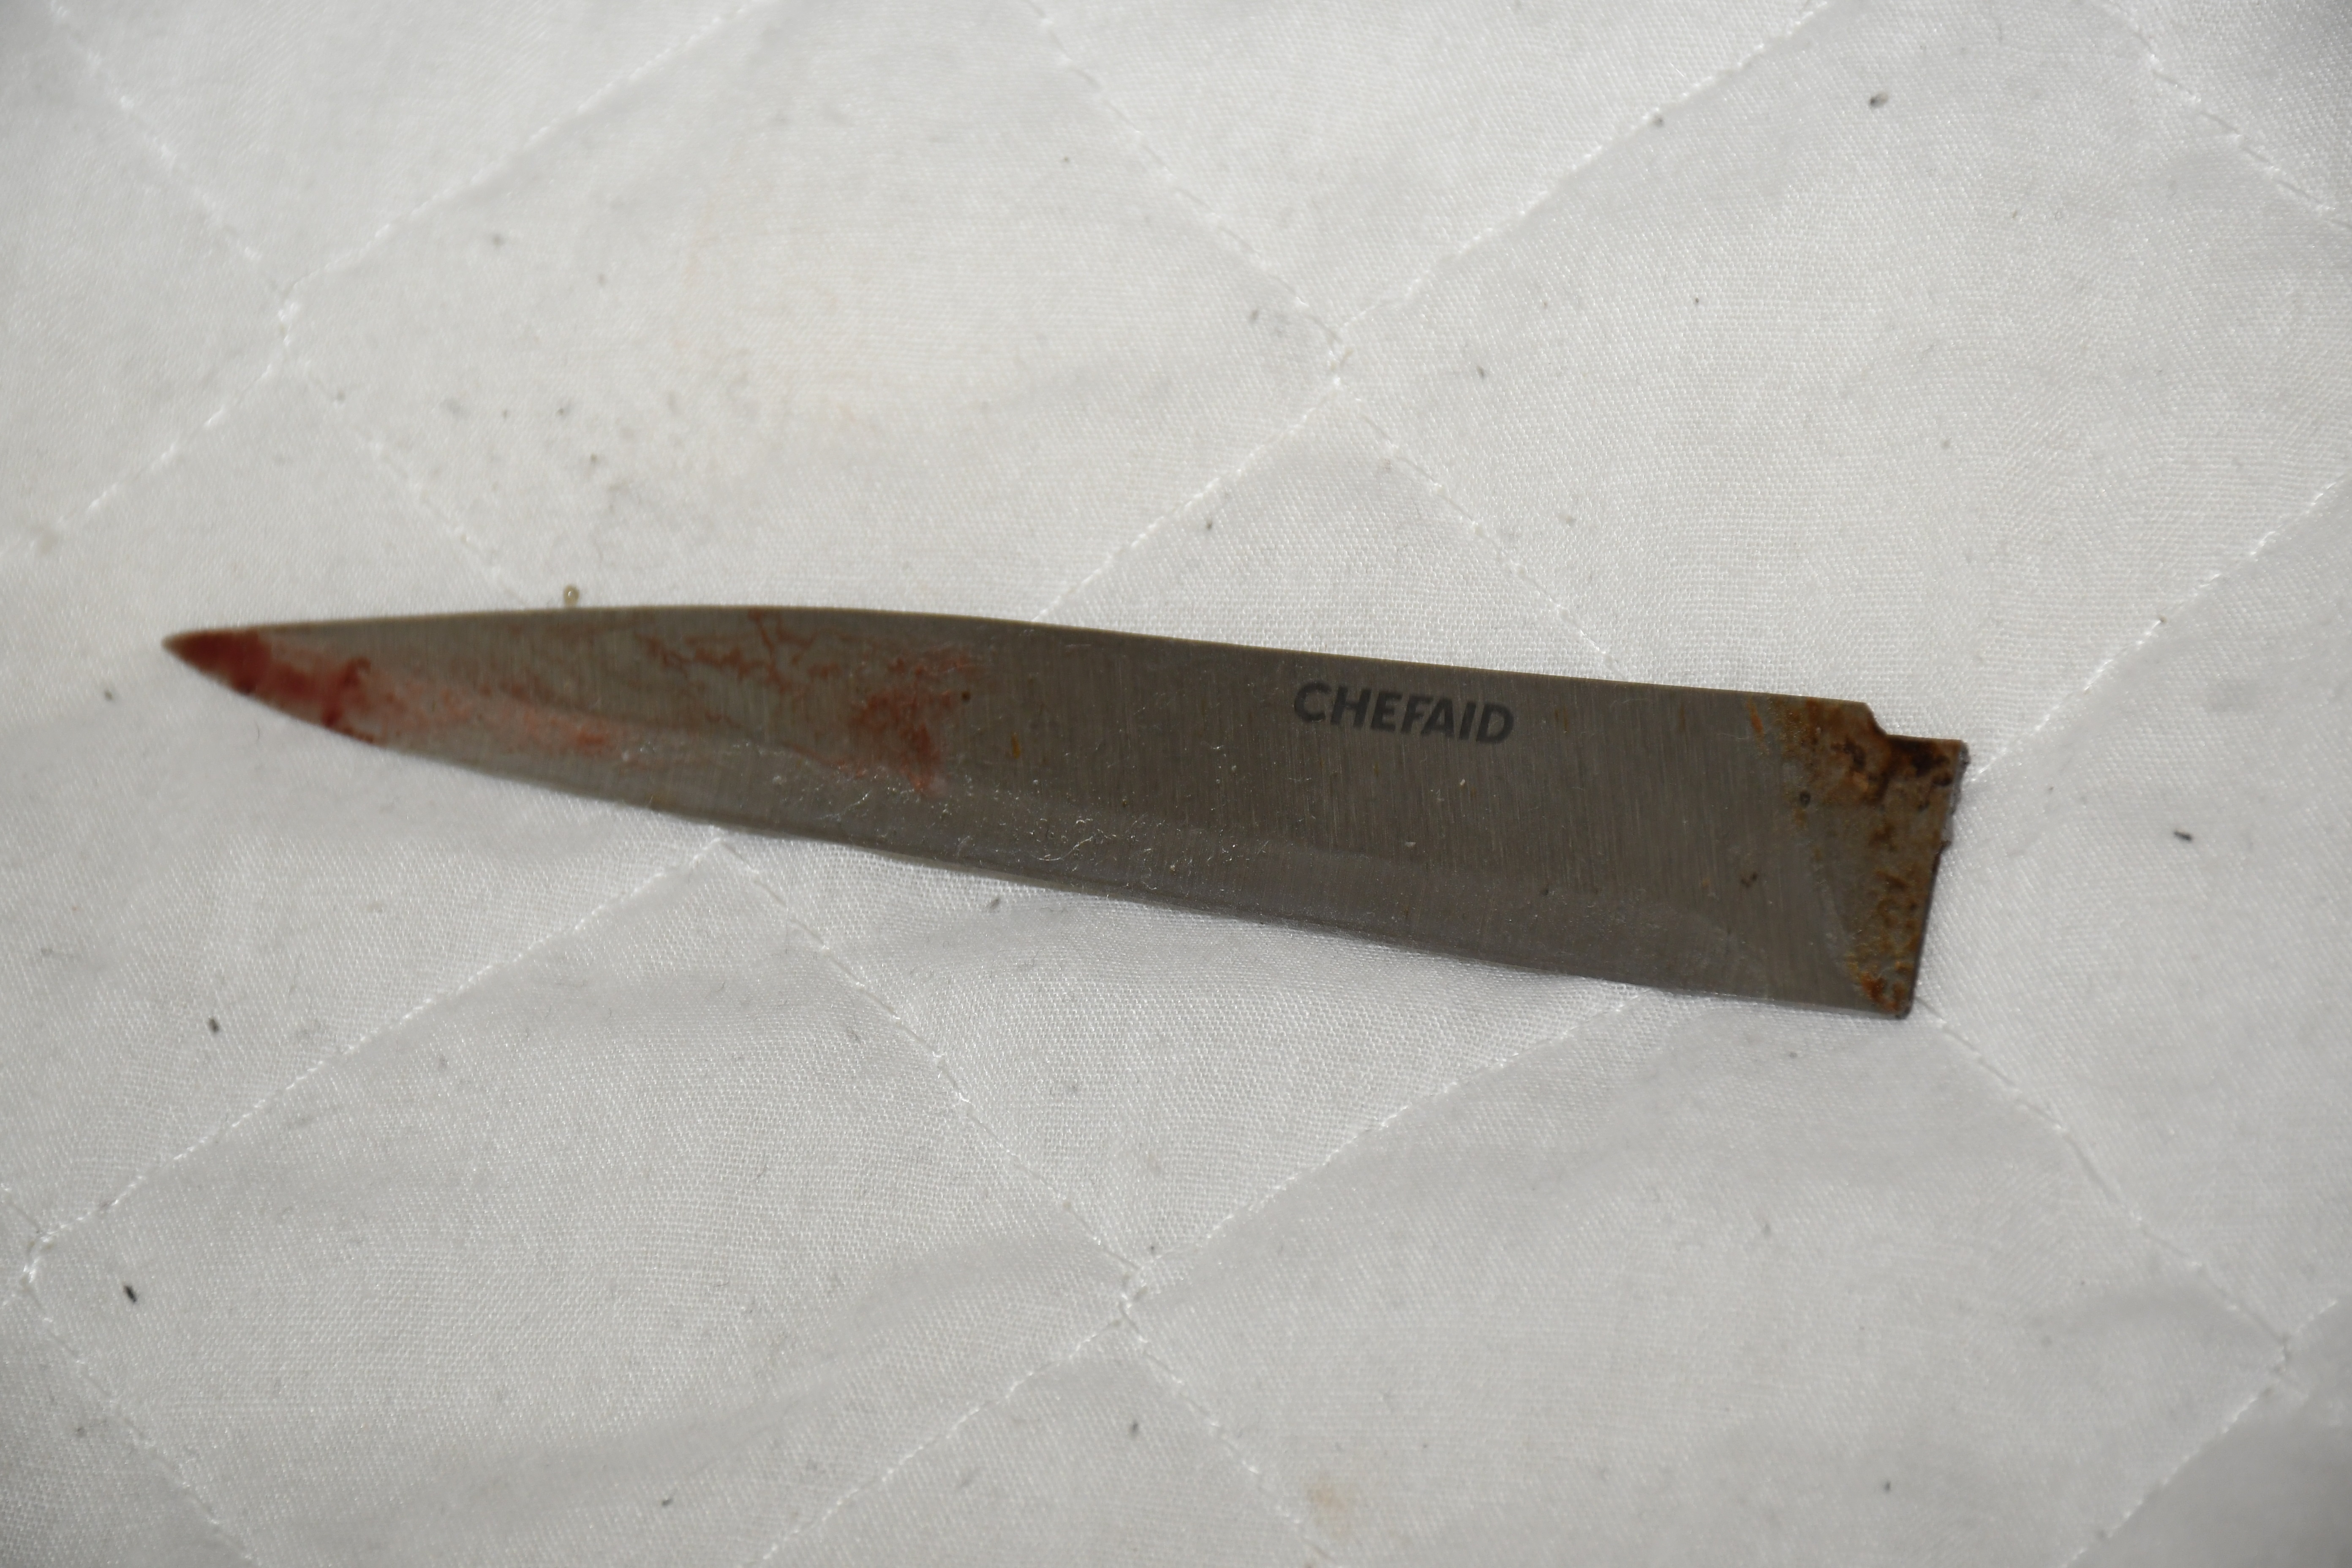 Die grifflose und blutige Klinge eines Messers, das nach dem Angriff gefunden wurde